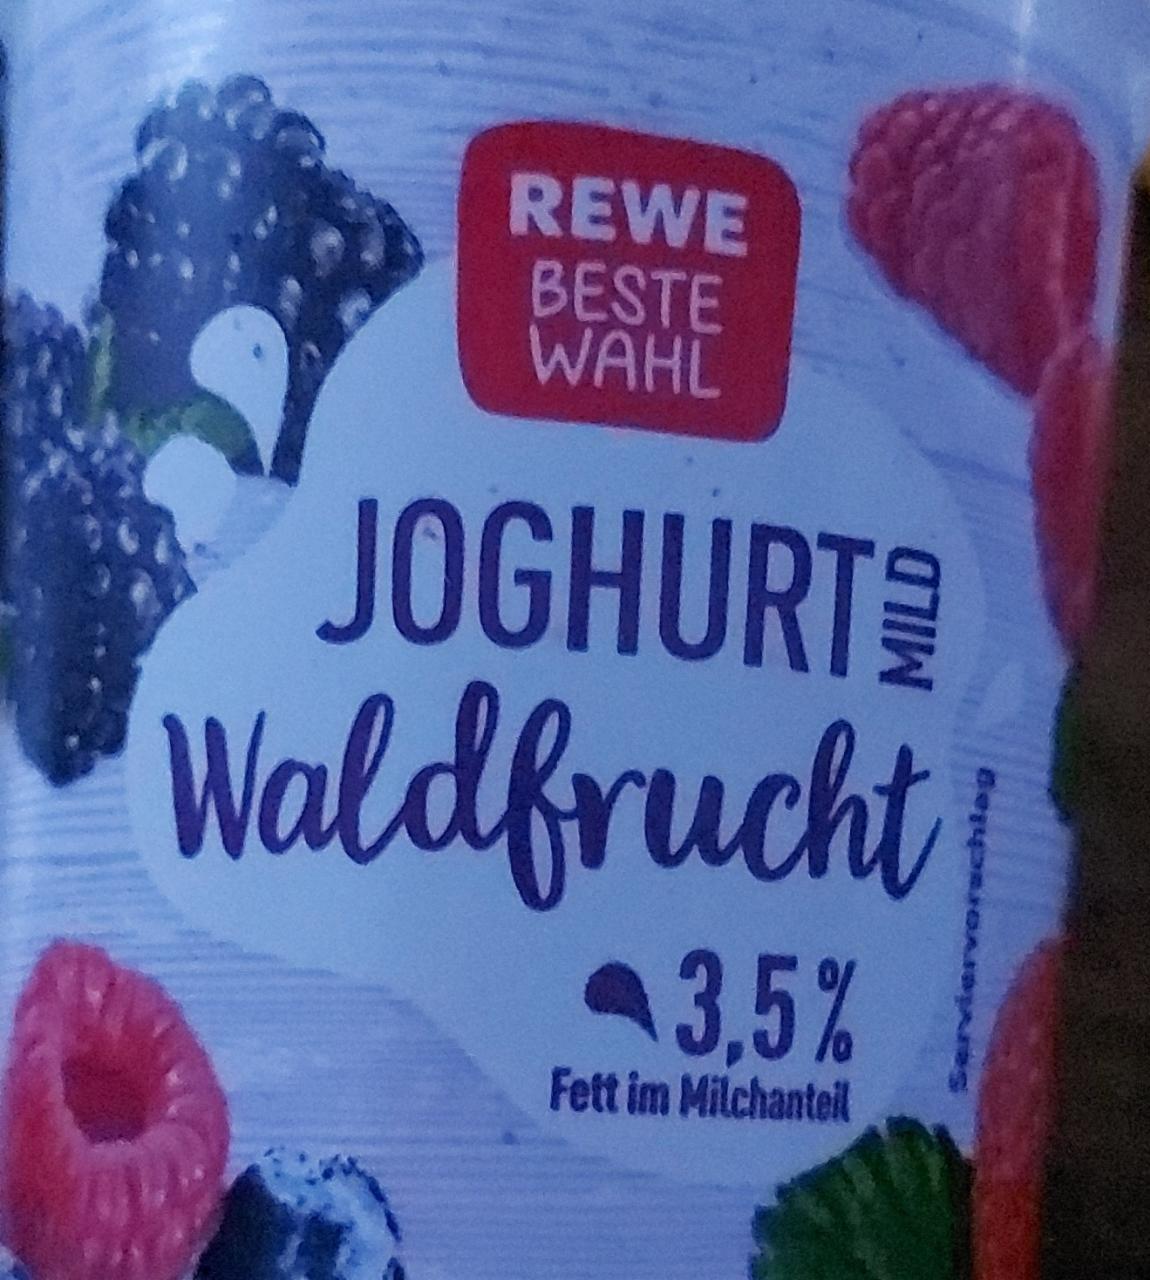 Fotografie - Joghurt mild Waldfrucht 3,5% Rewe beste wahl